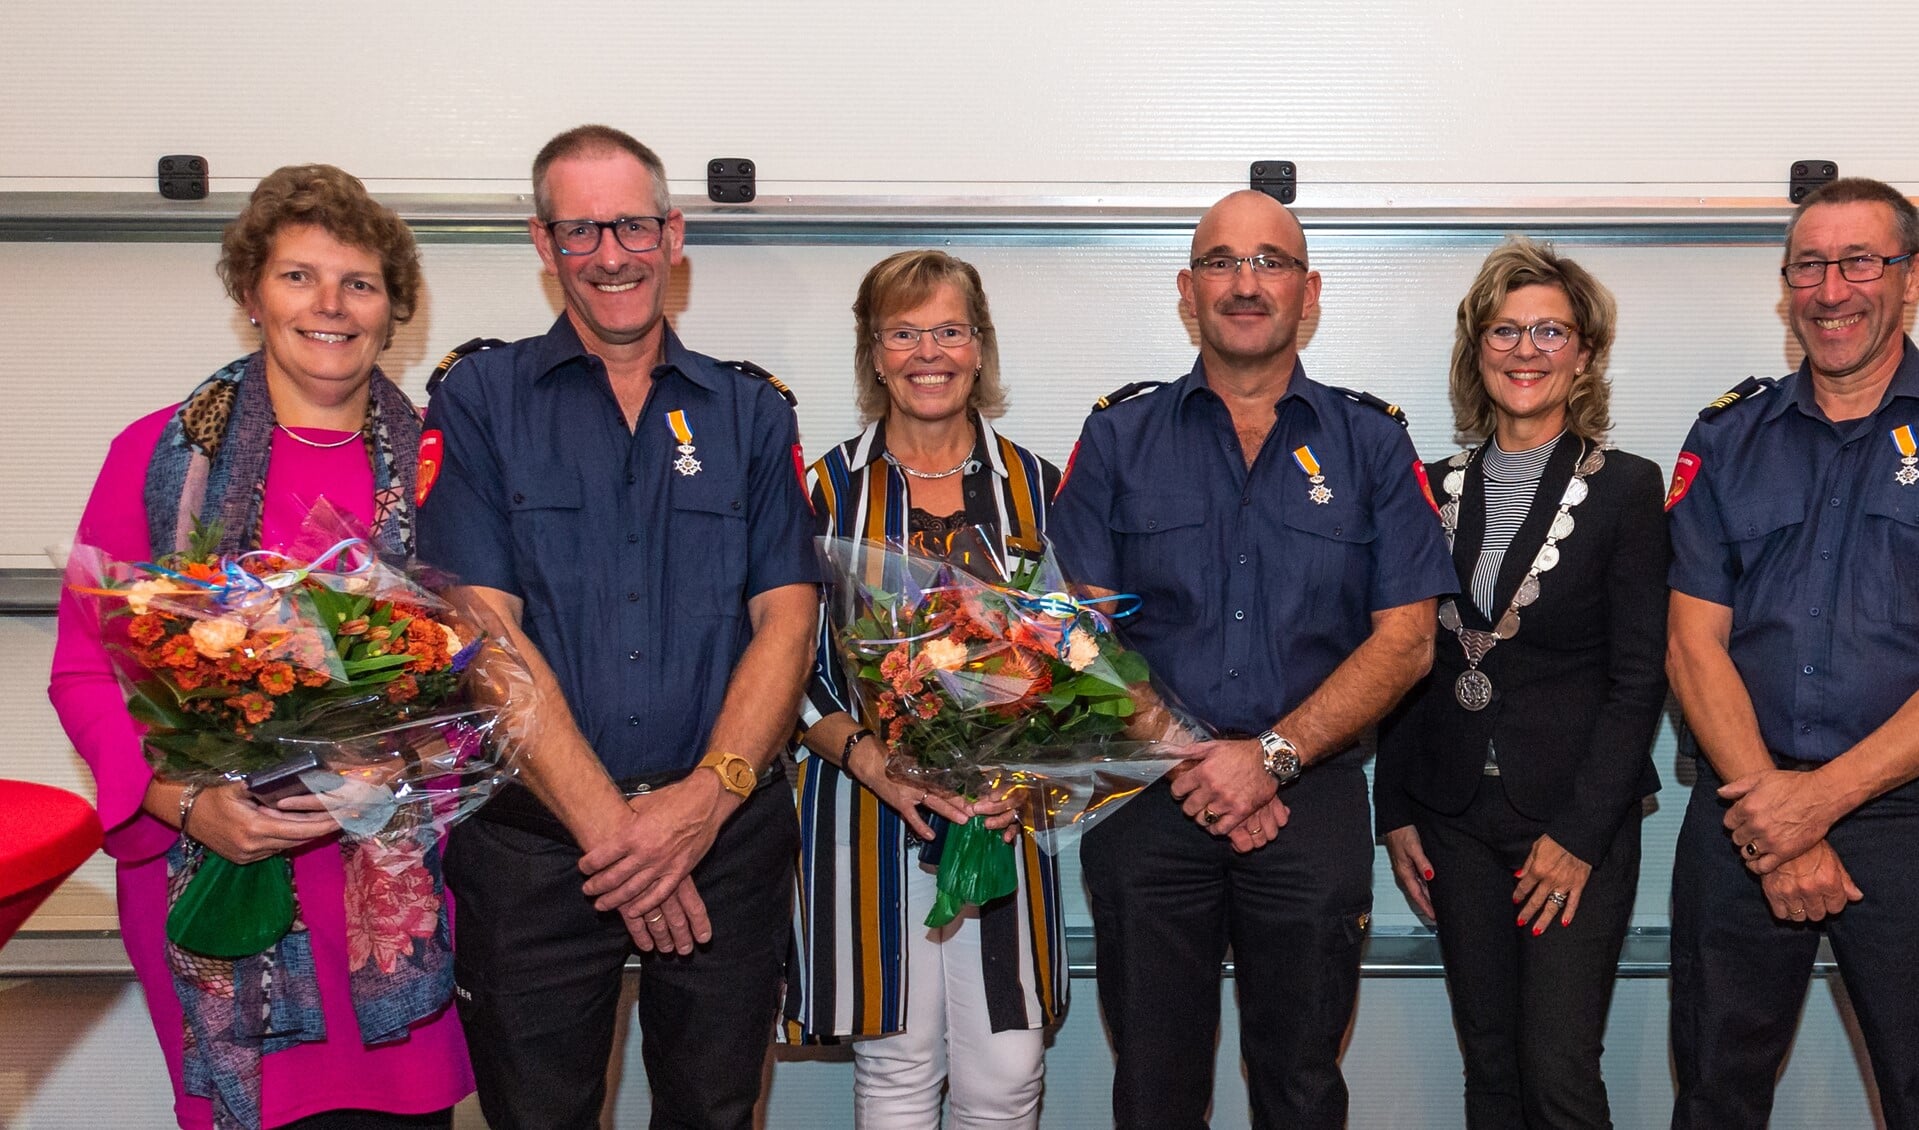 © Wim van Vossen Fotografie - Koninklijke onderscheidingen voor brandweerman Bram Kievit, Kees Bechtum en Peter Koppenaal